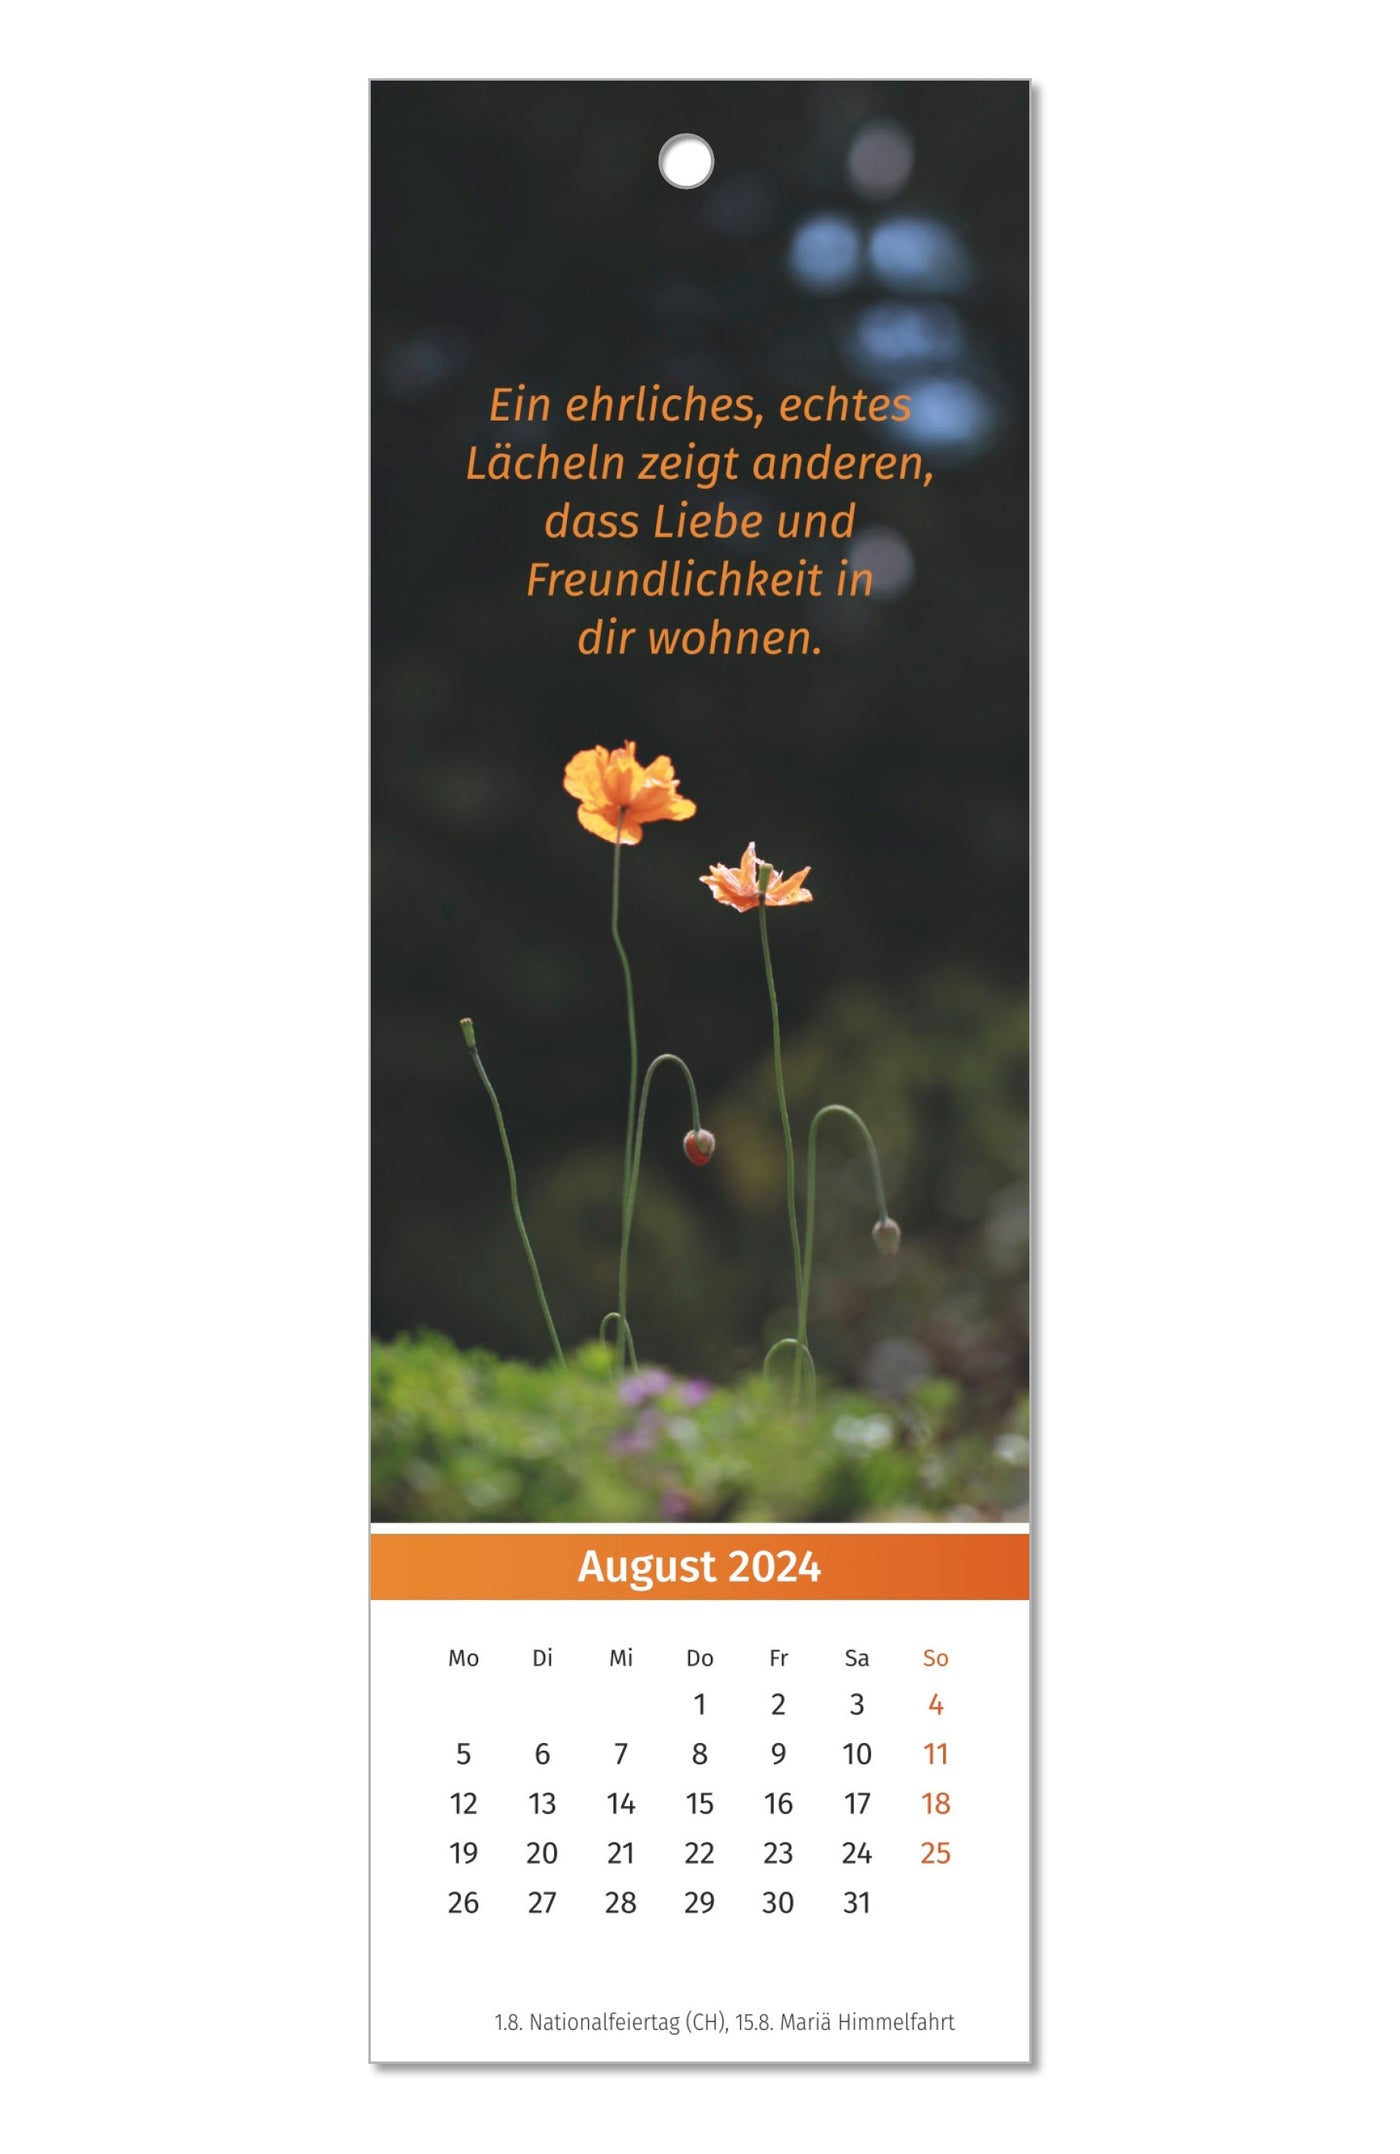 Der Lebensfreude Lesezeichen-Kalender 2024 PAL Verlag Doris Wolf Rolf Merkle Maja Guenther Inspiration Geschenk Lesen